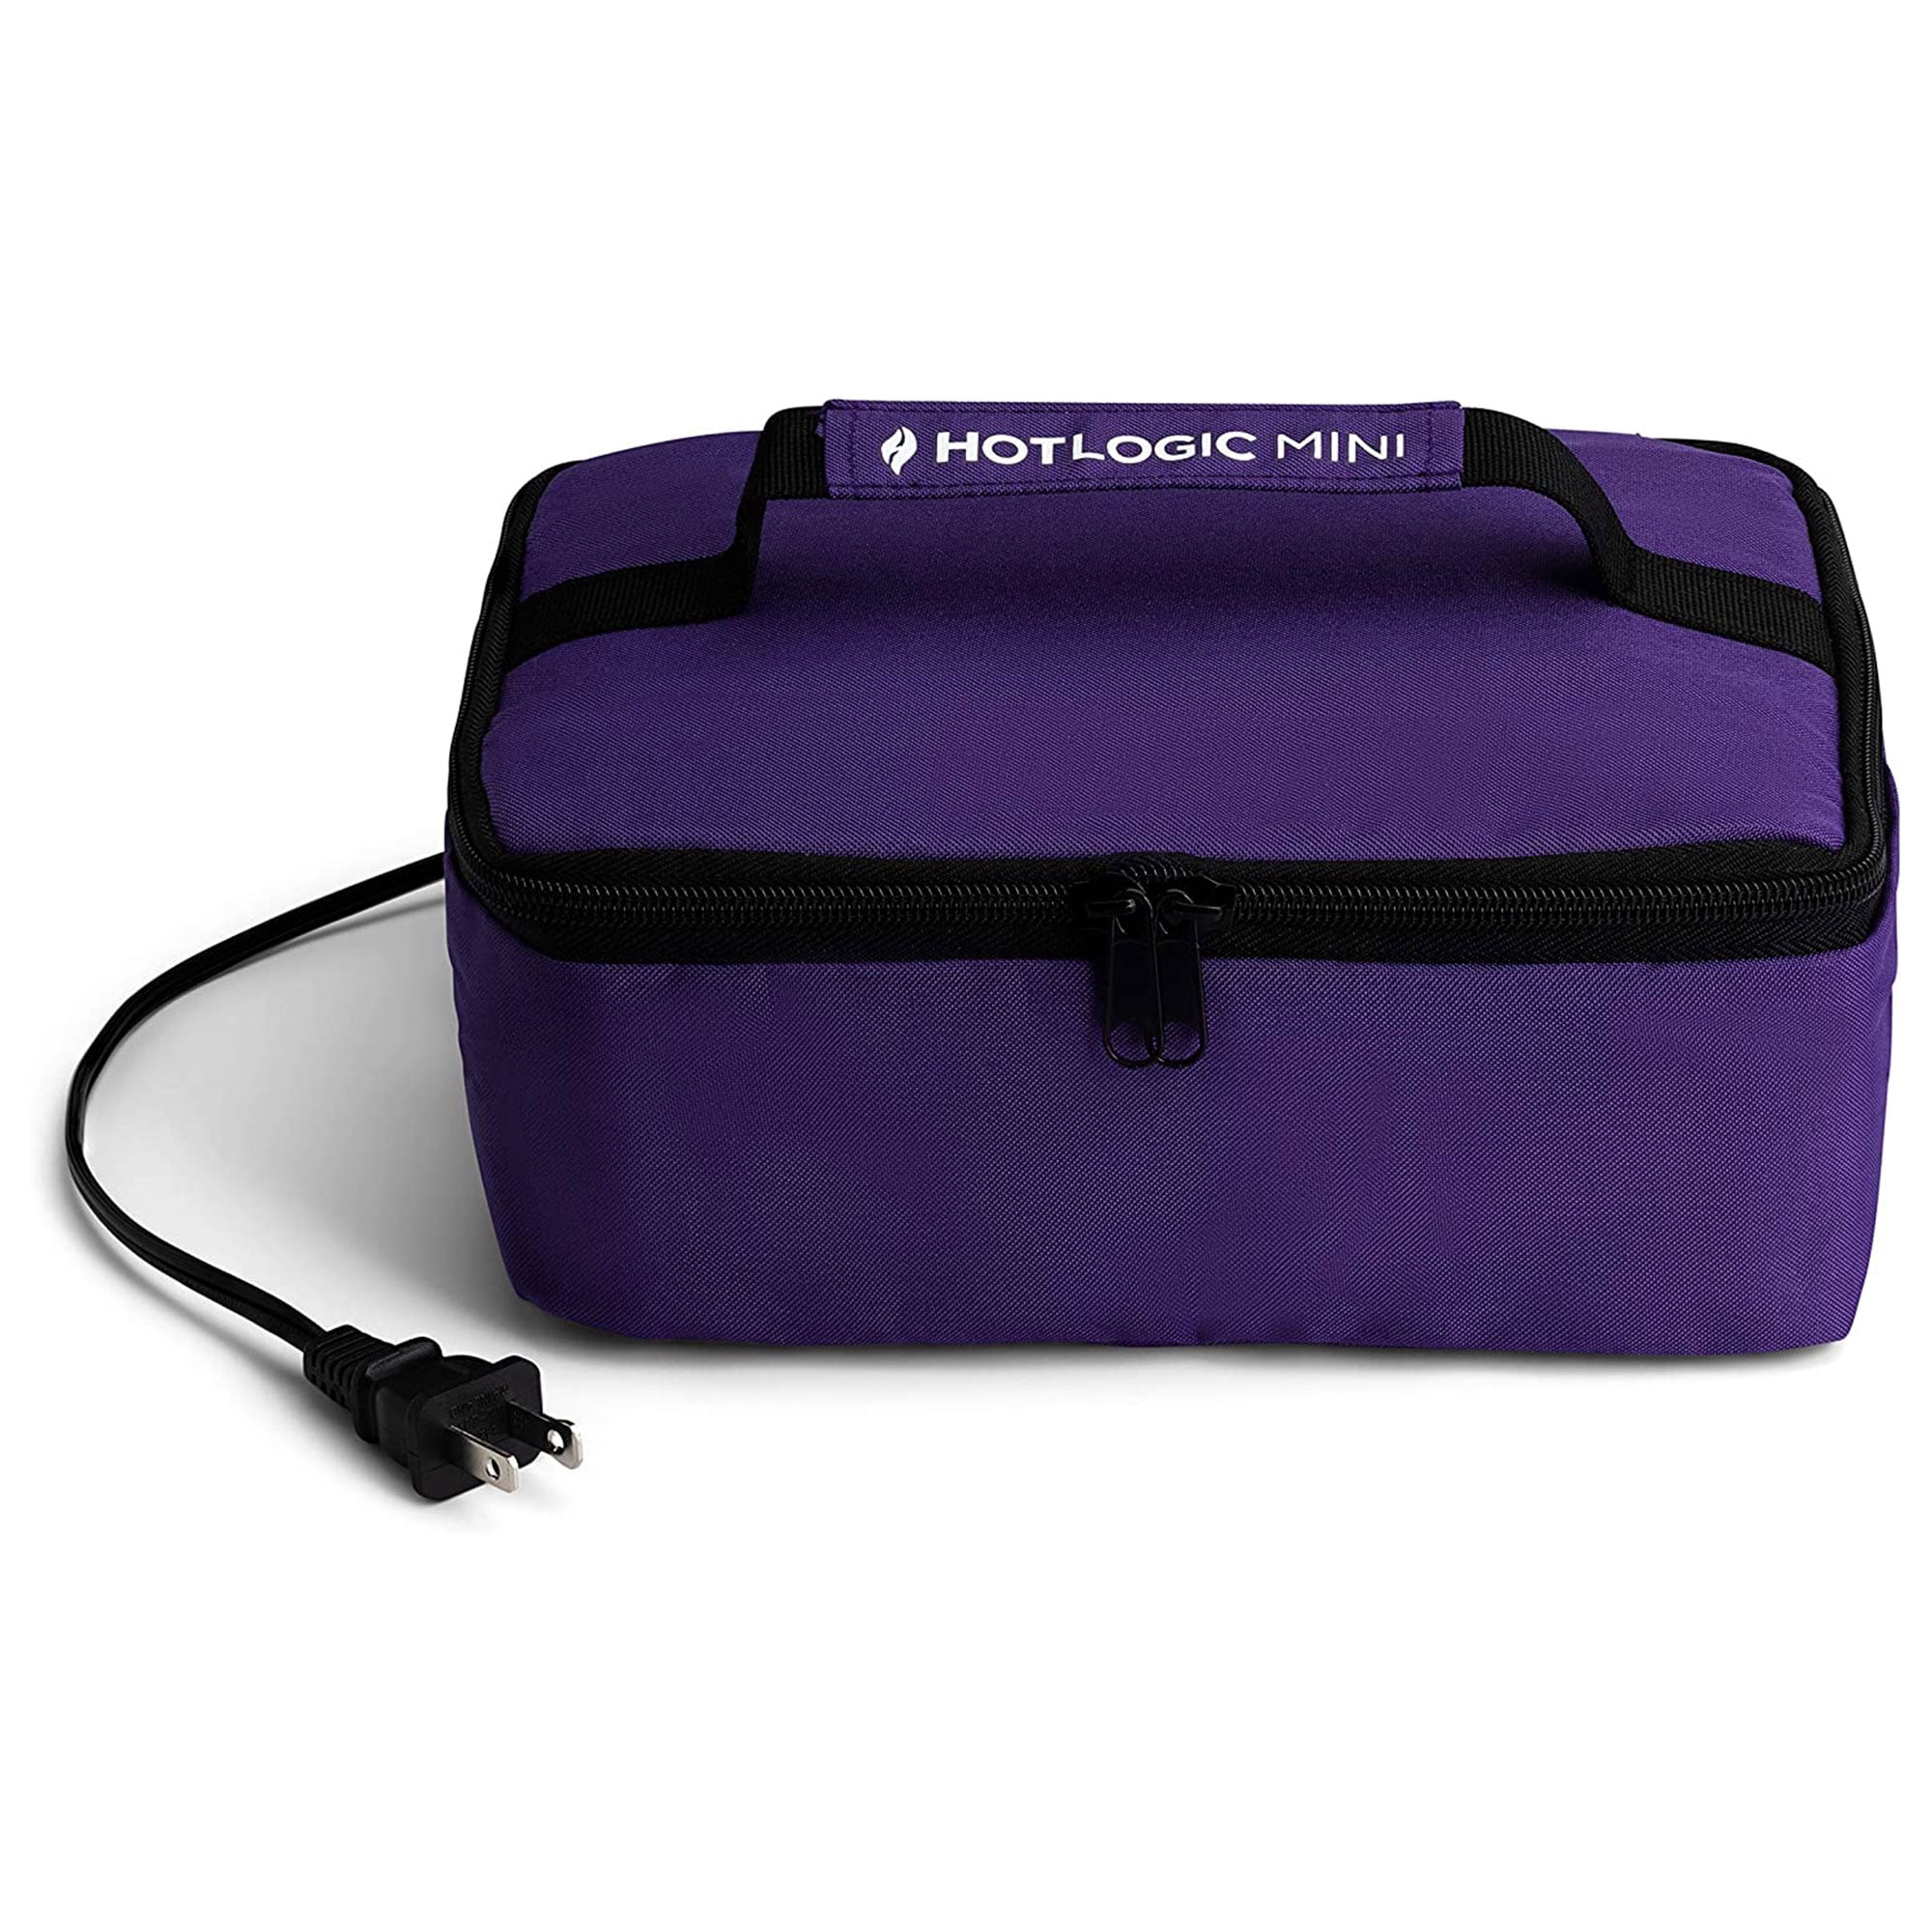 Hotlogic Portable Personal Expandable 12V Mini Oven XP, Teal